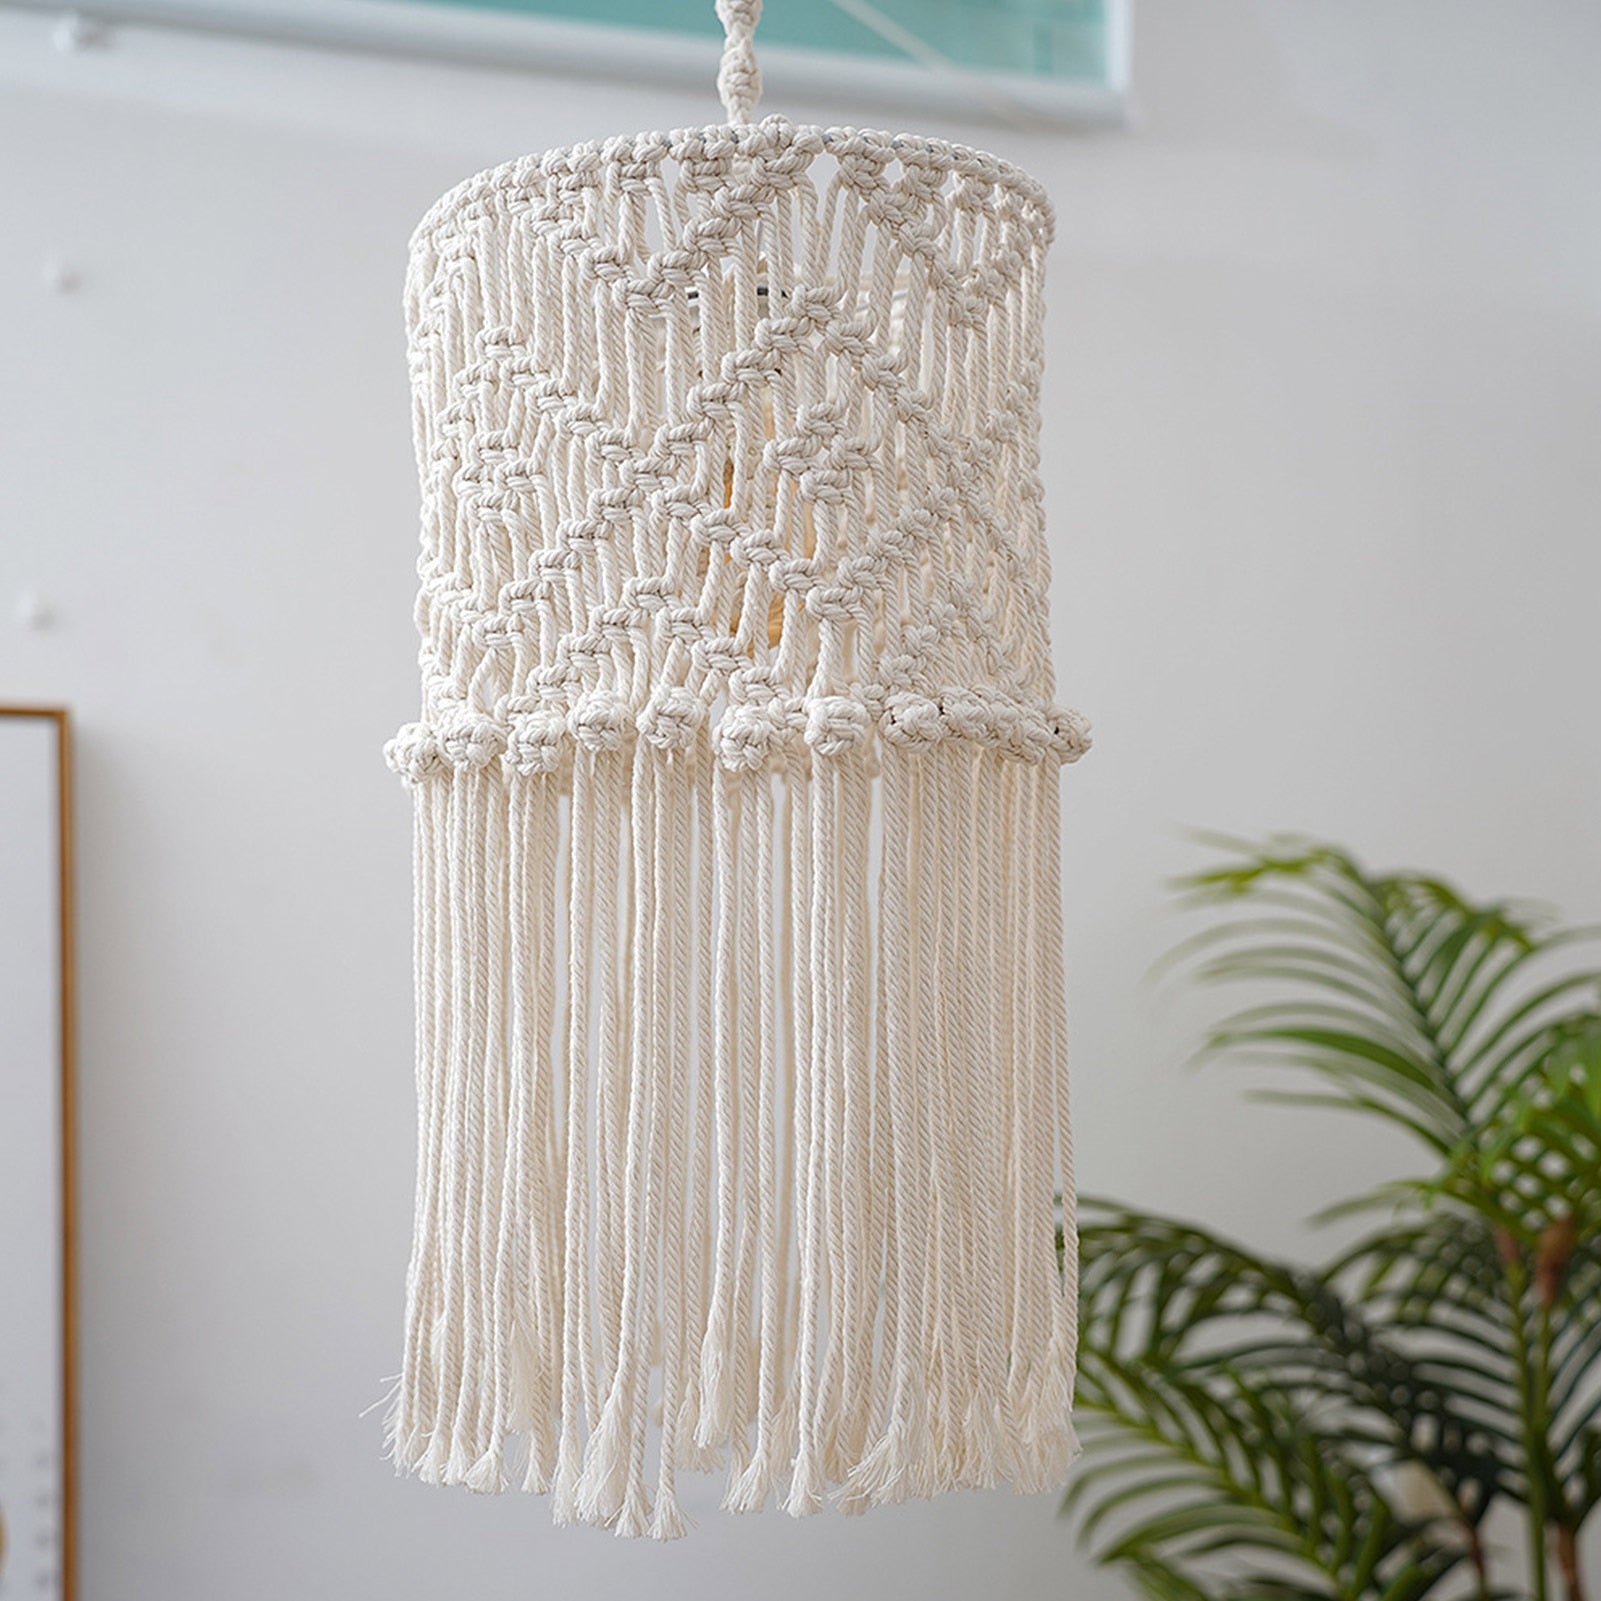 Macrame Lamp Shade Hangings